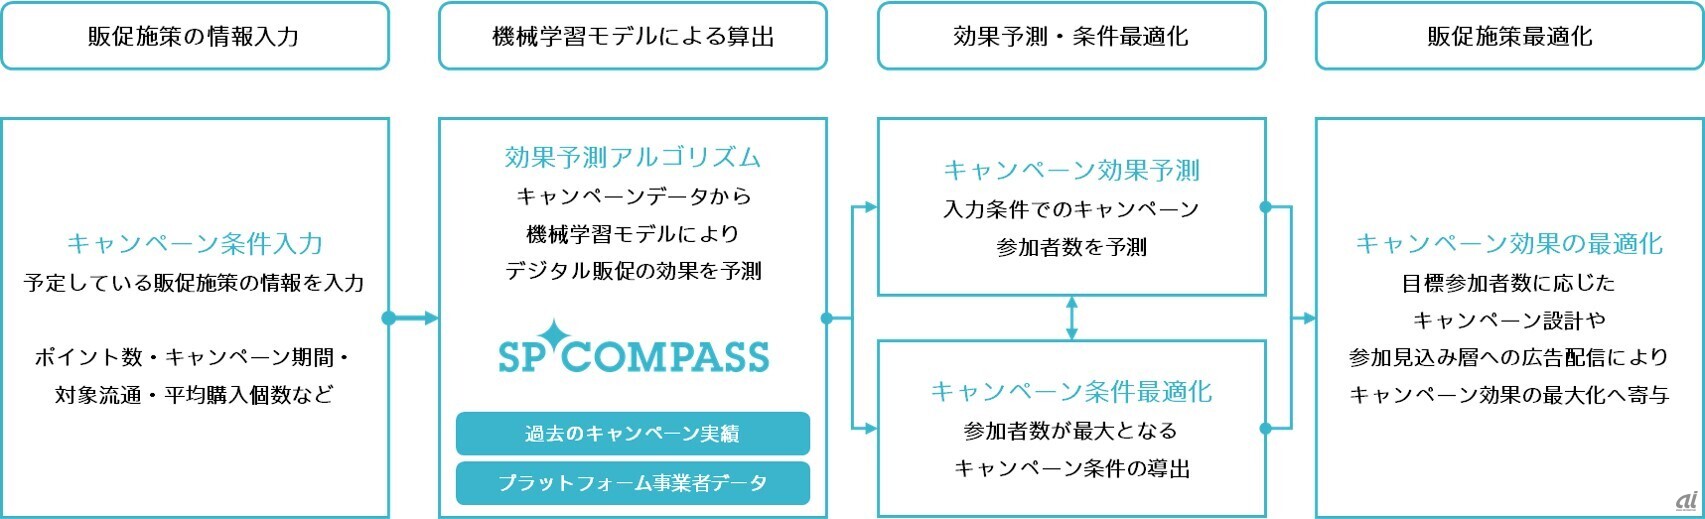 SP COMPASSの仕組み